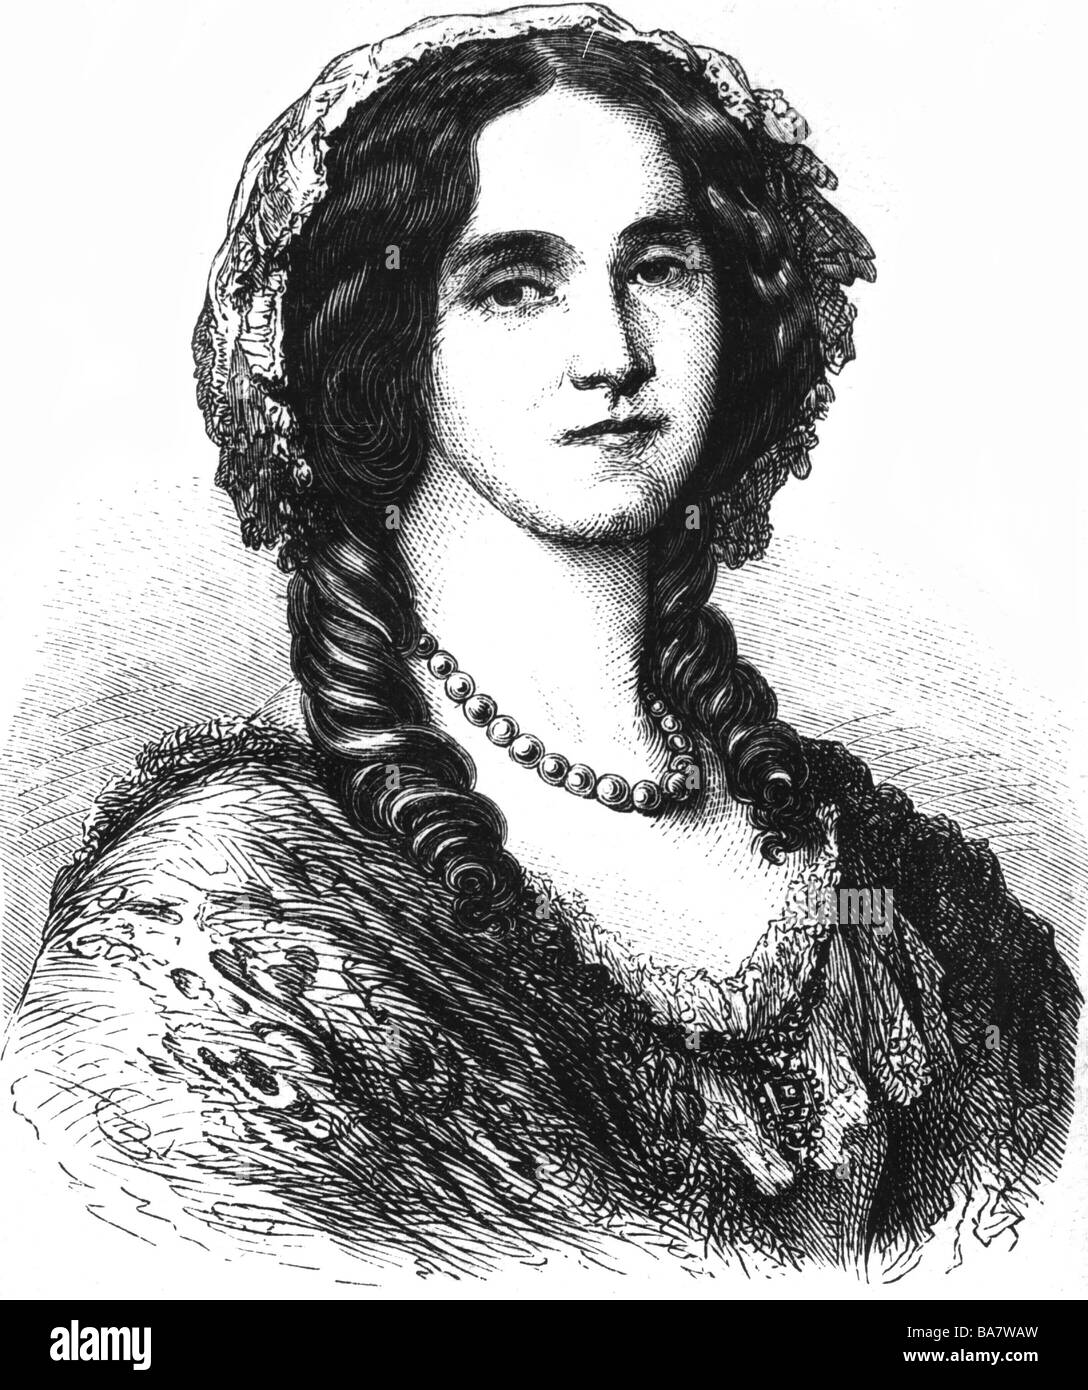 Augusta Marie, 30.9.1811 - 7.1.1890, pressa tedesca 18.1.1871 - 9.3.1888, ritratto, incisione in legno, circa 1840, Foto Stock